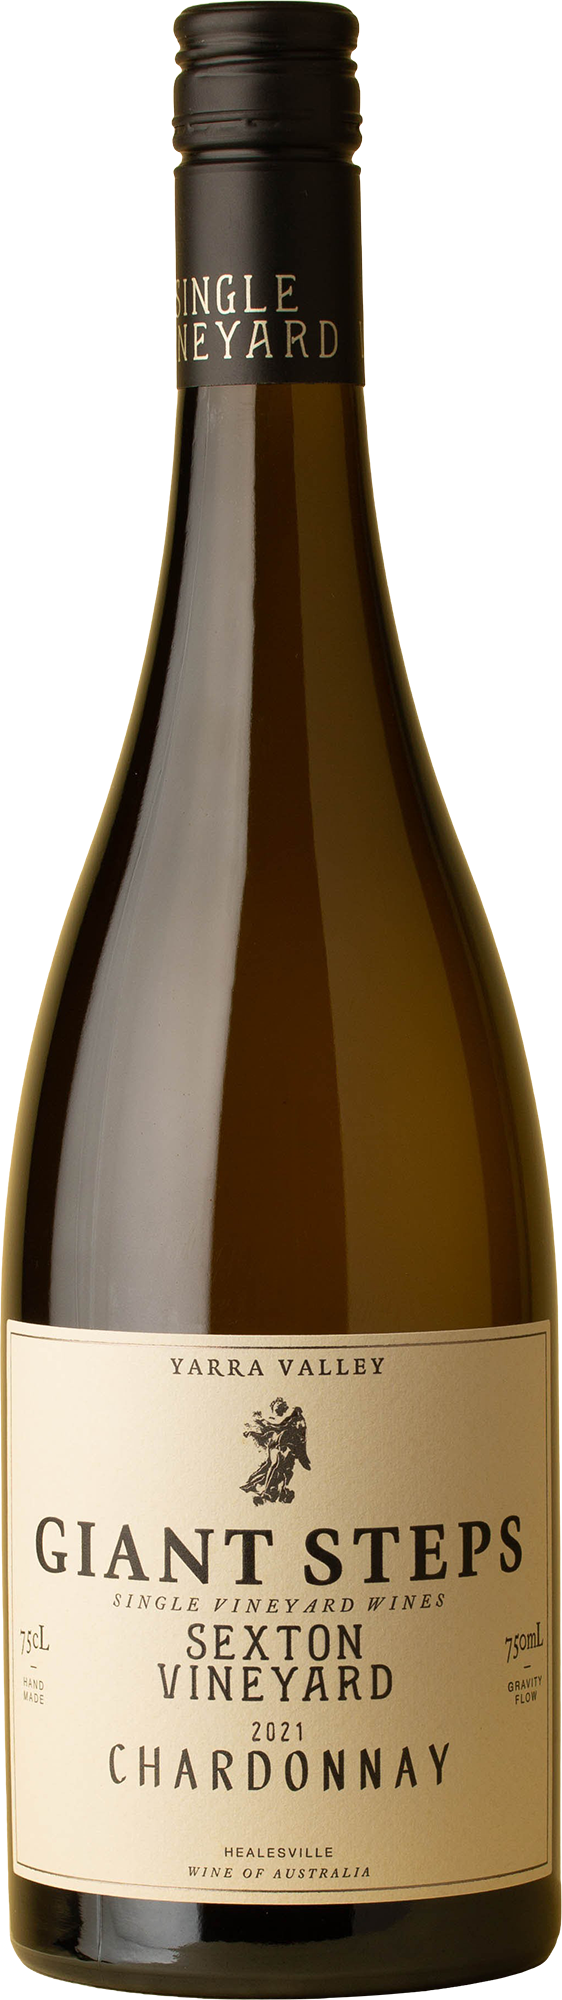 Giant Steps - Sexton Vineyard Chardonnay 2021 White Wine